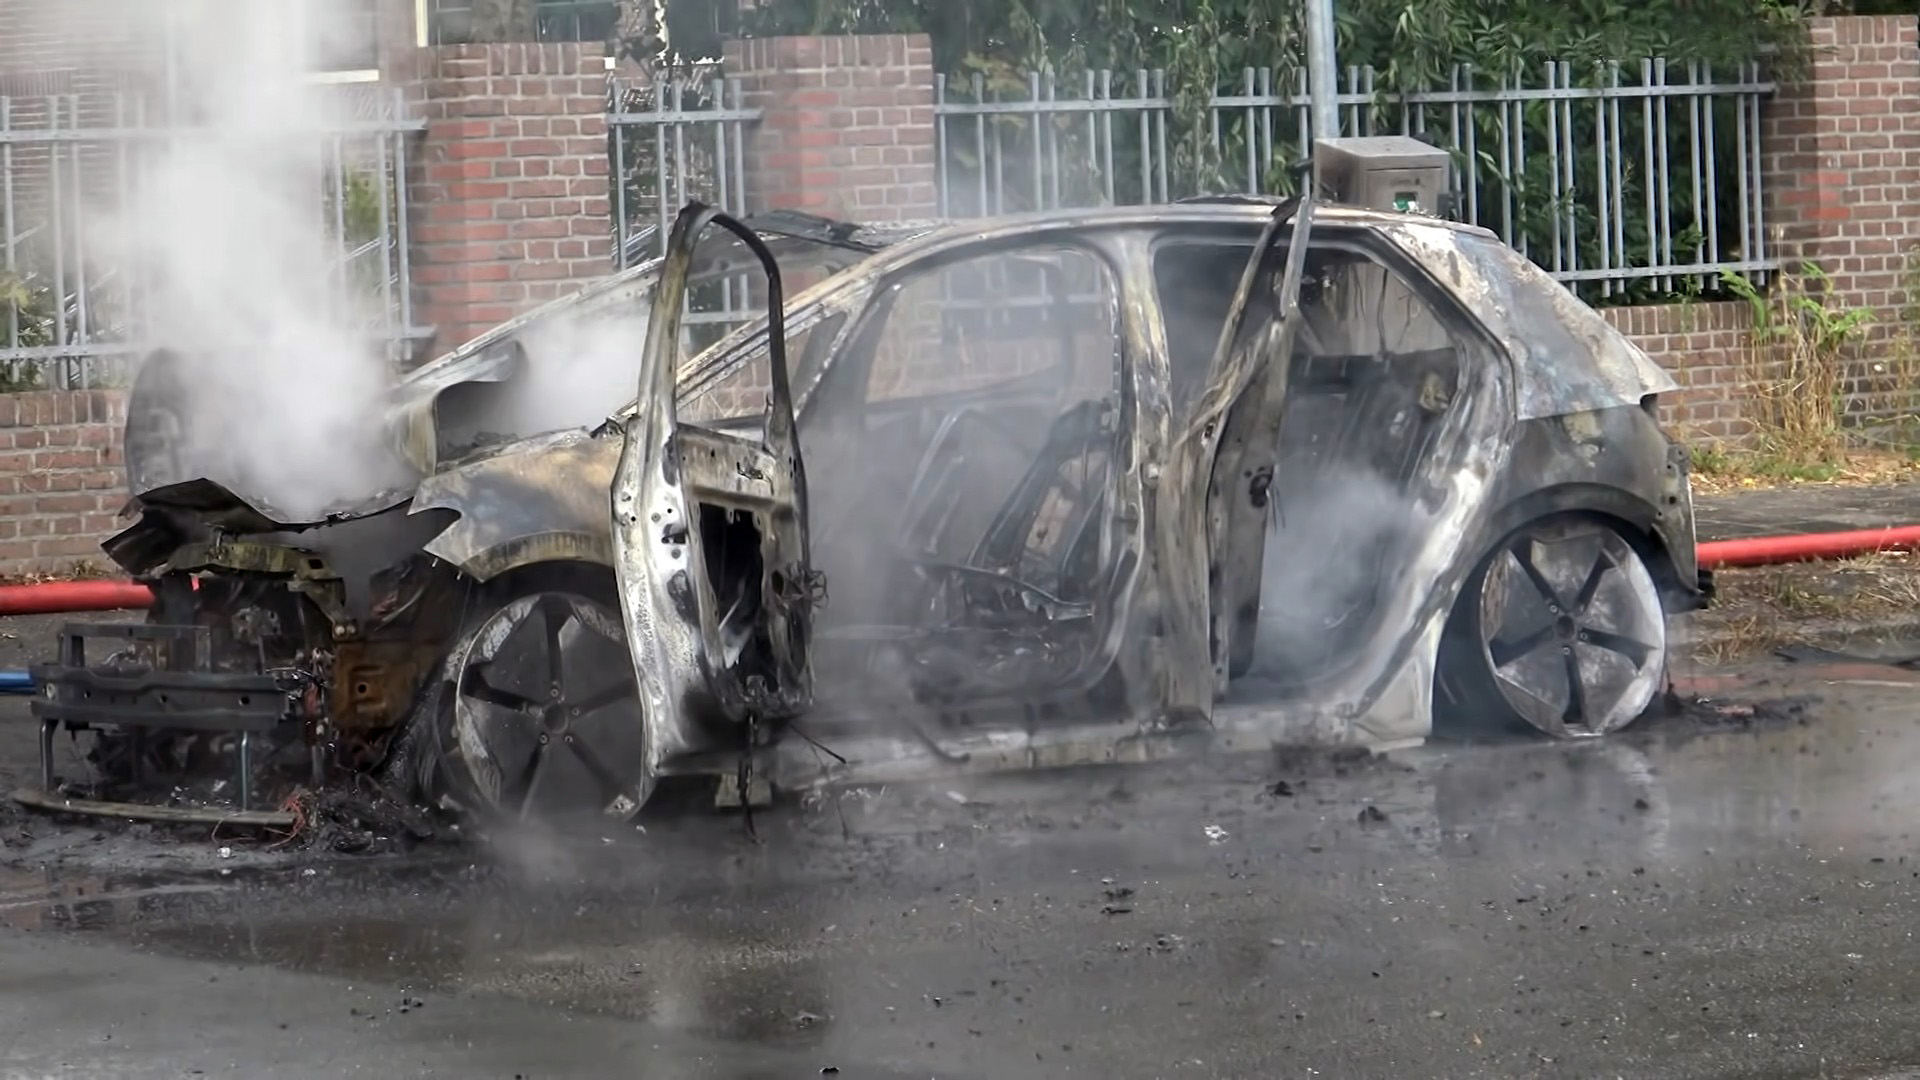 Вспыхнул как факел: в Нидерландах электрокар Volkswagen ID.3 сгорел дотла после зарядки